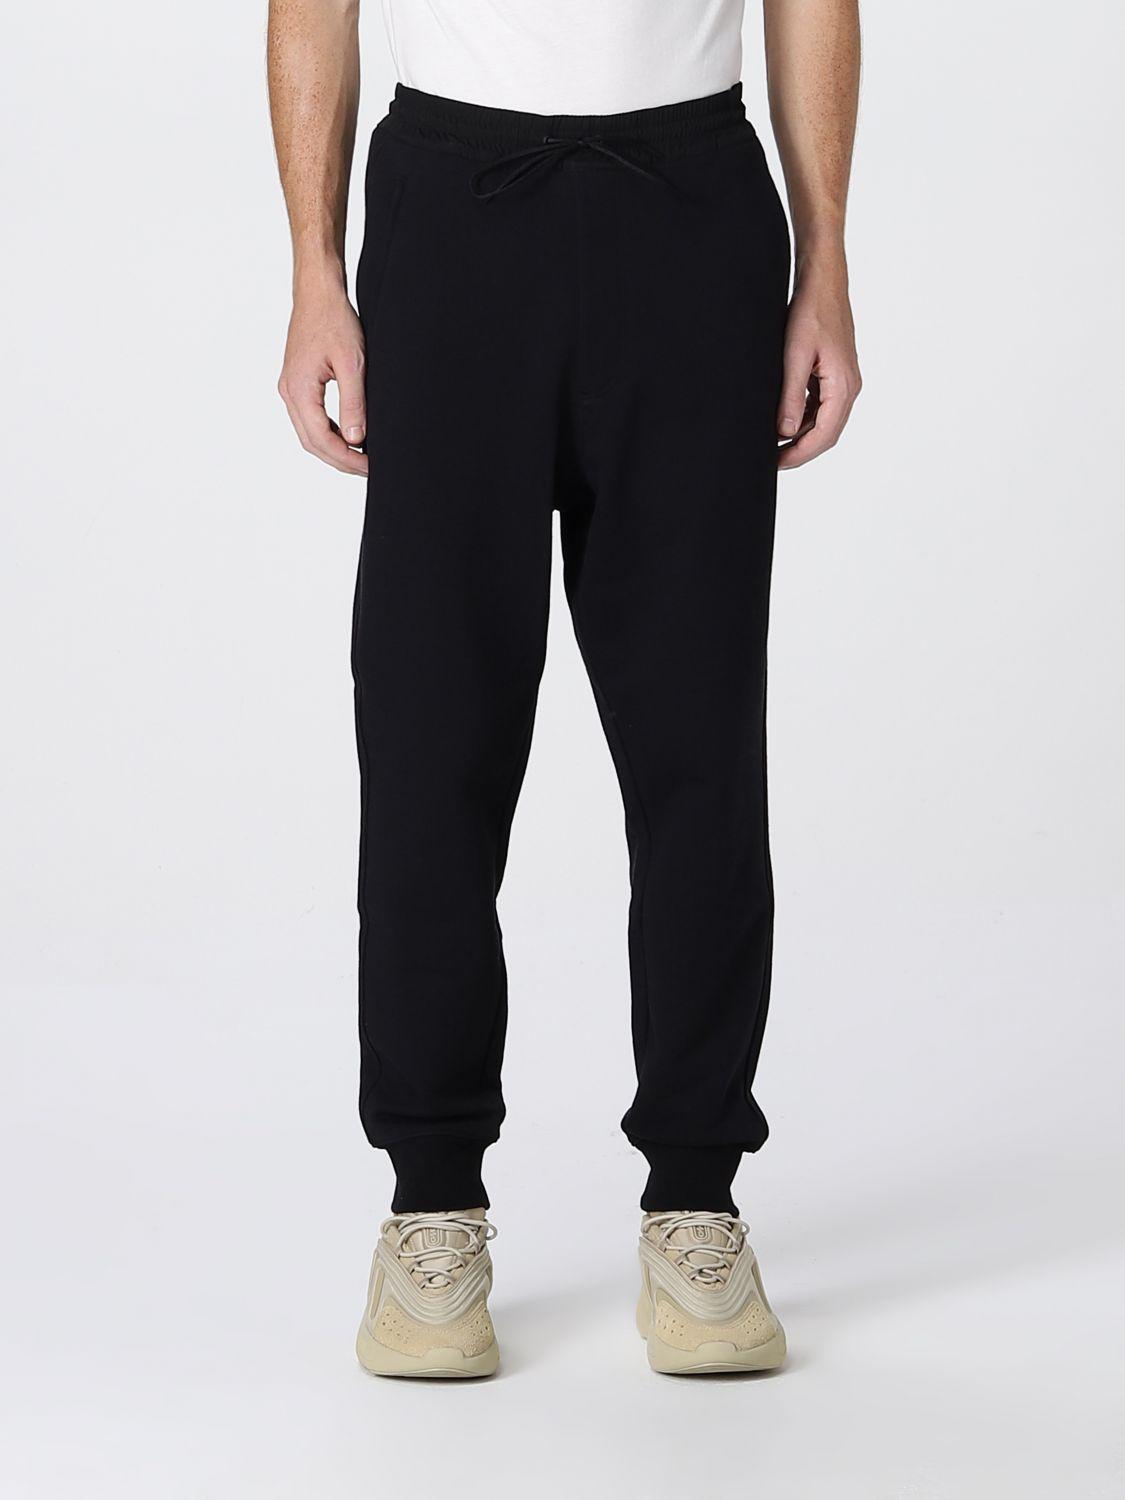 Pantalones de chándal con logo estampado DSquared² de hombre de color Negro pantalones de vestir y chinos Hombre Ropa de Pantalones 